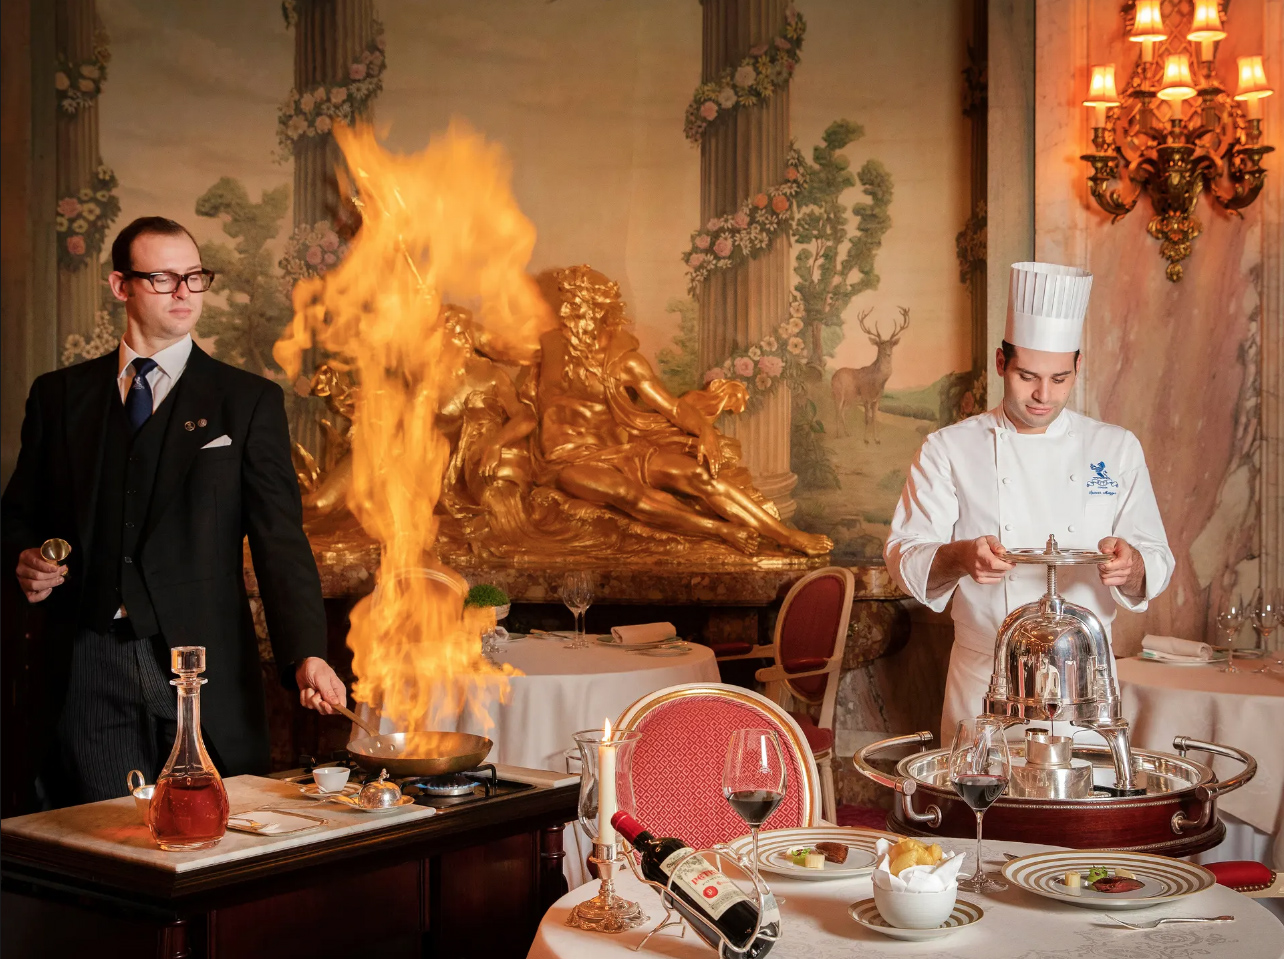 Στο εστιατόριο του ξενοδοχείου Ritz στο Λονδίνο δίνουν έμφαση στο ‘Arts de la Table’, μία θεατρική ιεροτελεστία που λαμβάνει χώρα δίπλα στο τραπέζι όπου γευματίζουν οι πελάτες